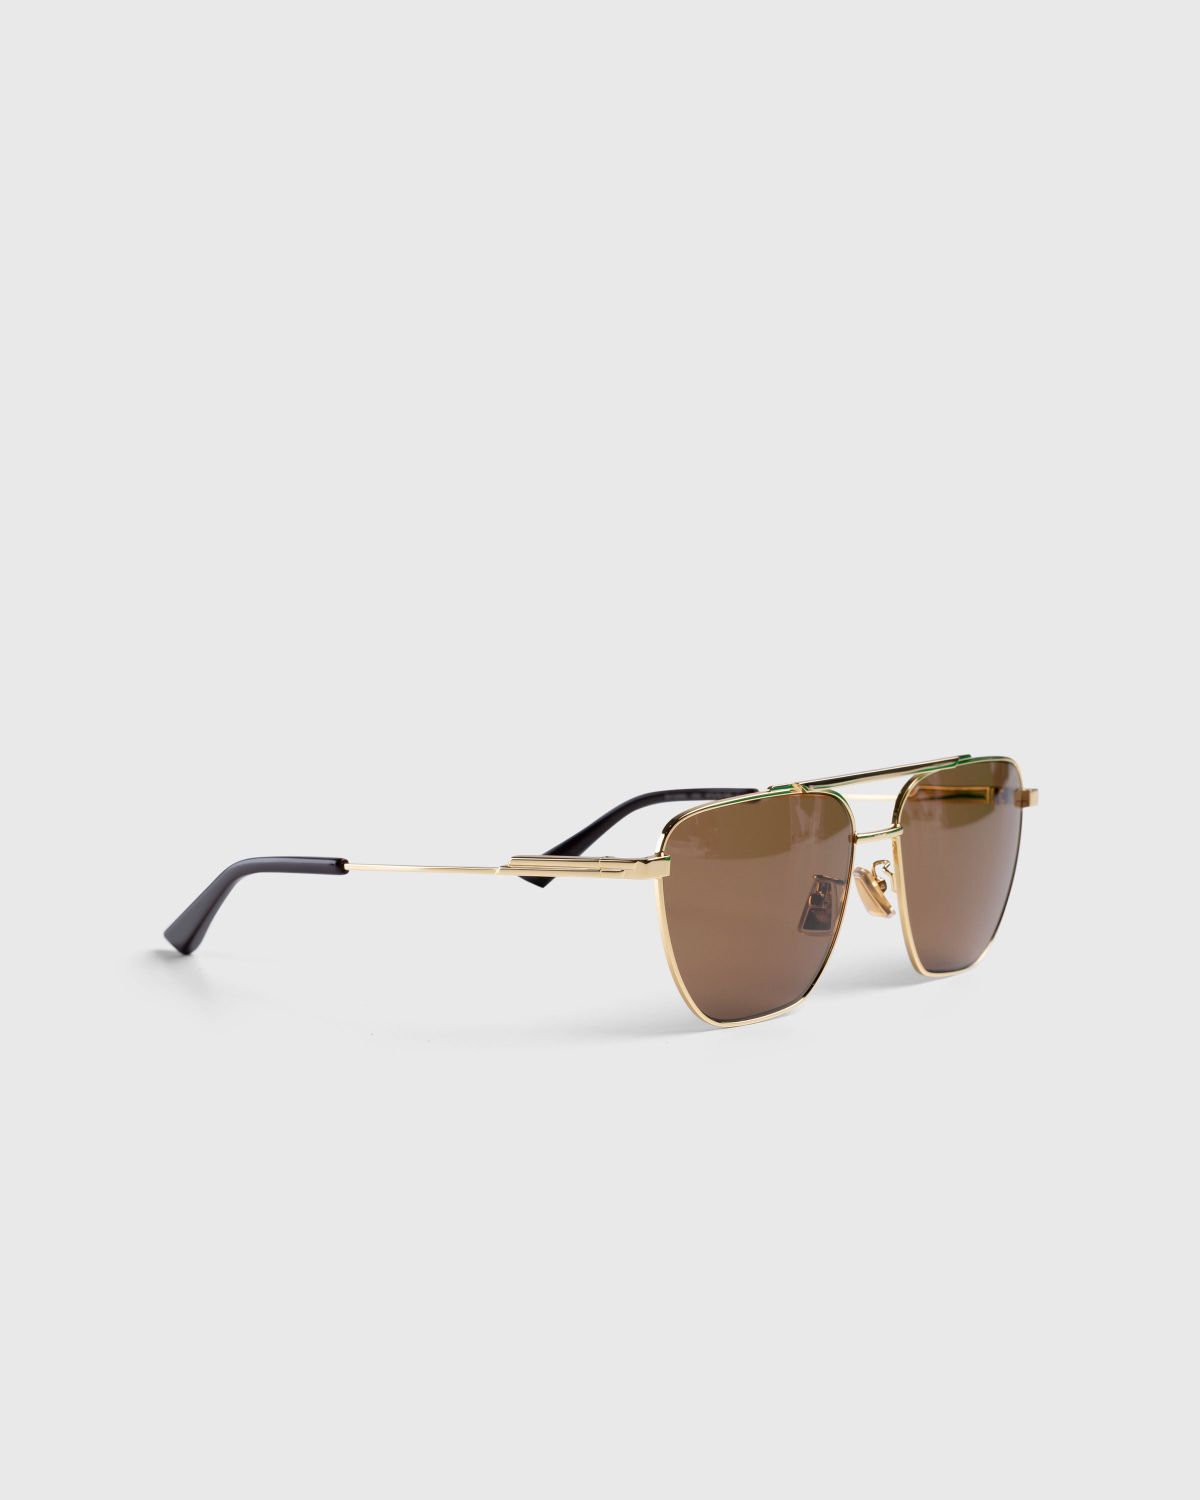 Unisex Full Rim Metal Pilot Sunglasses